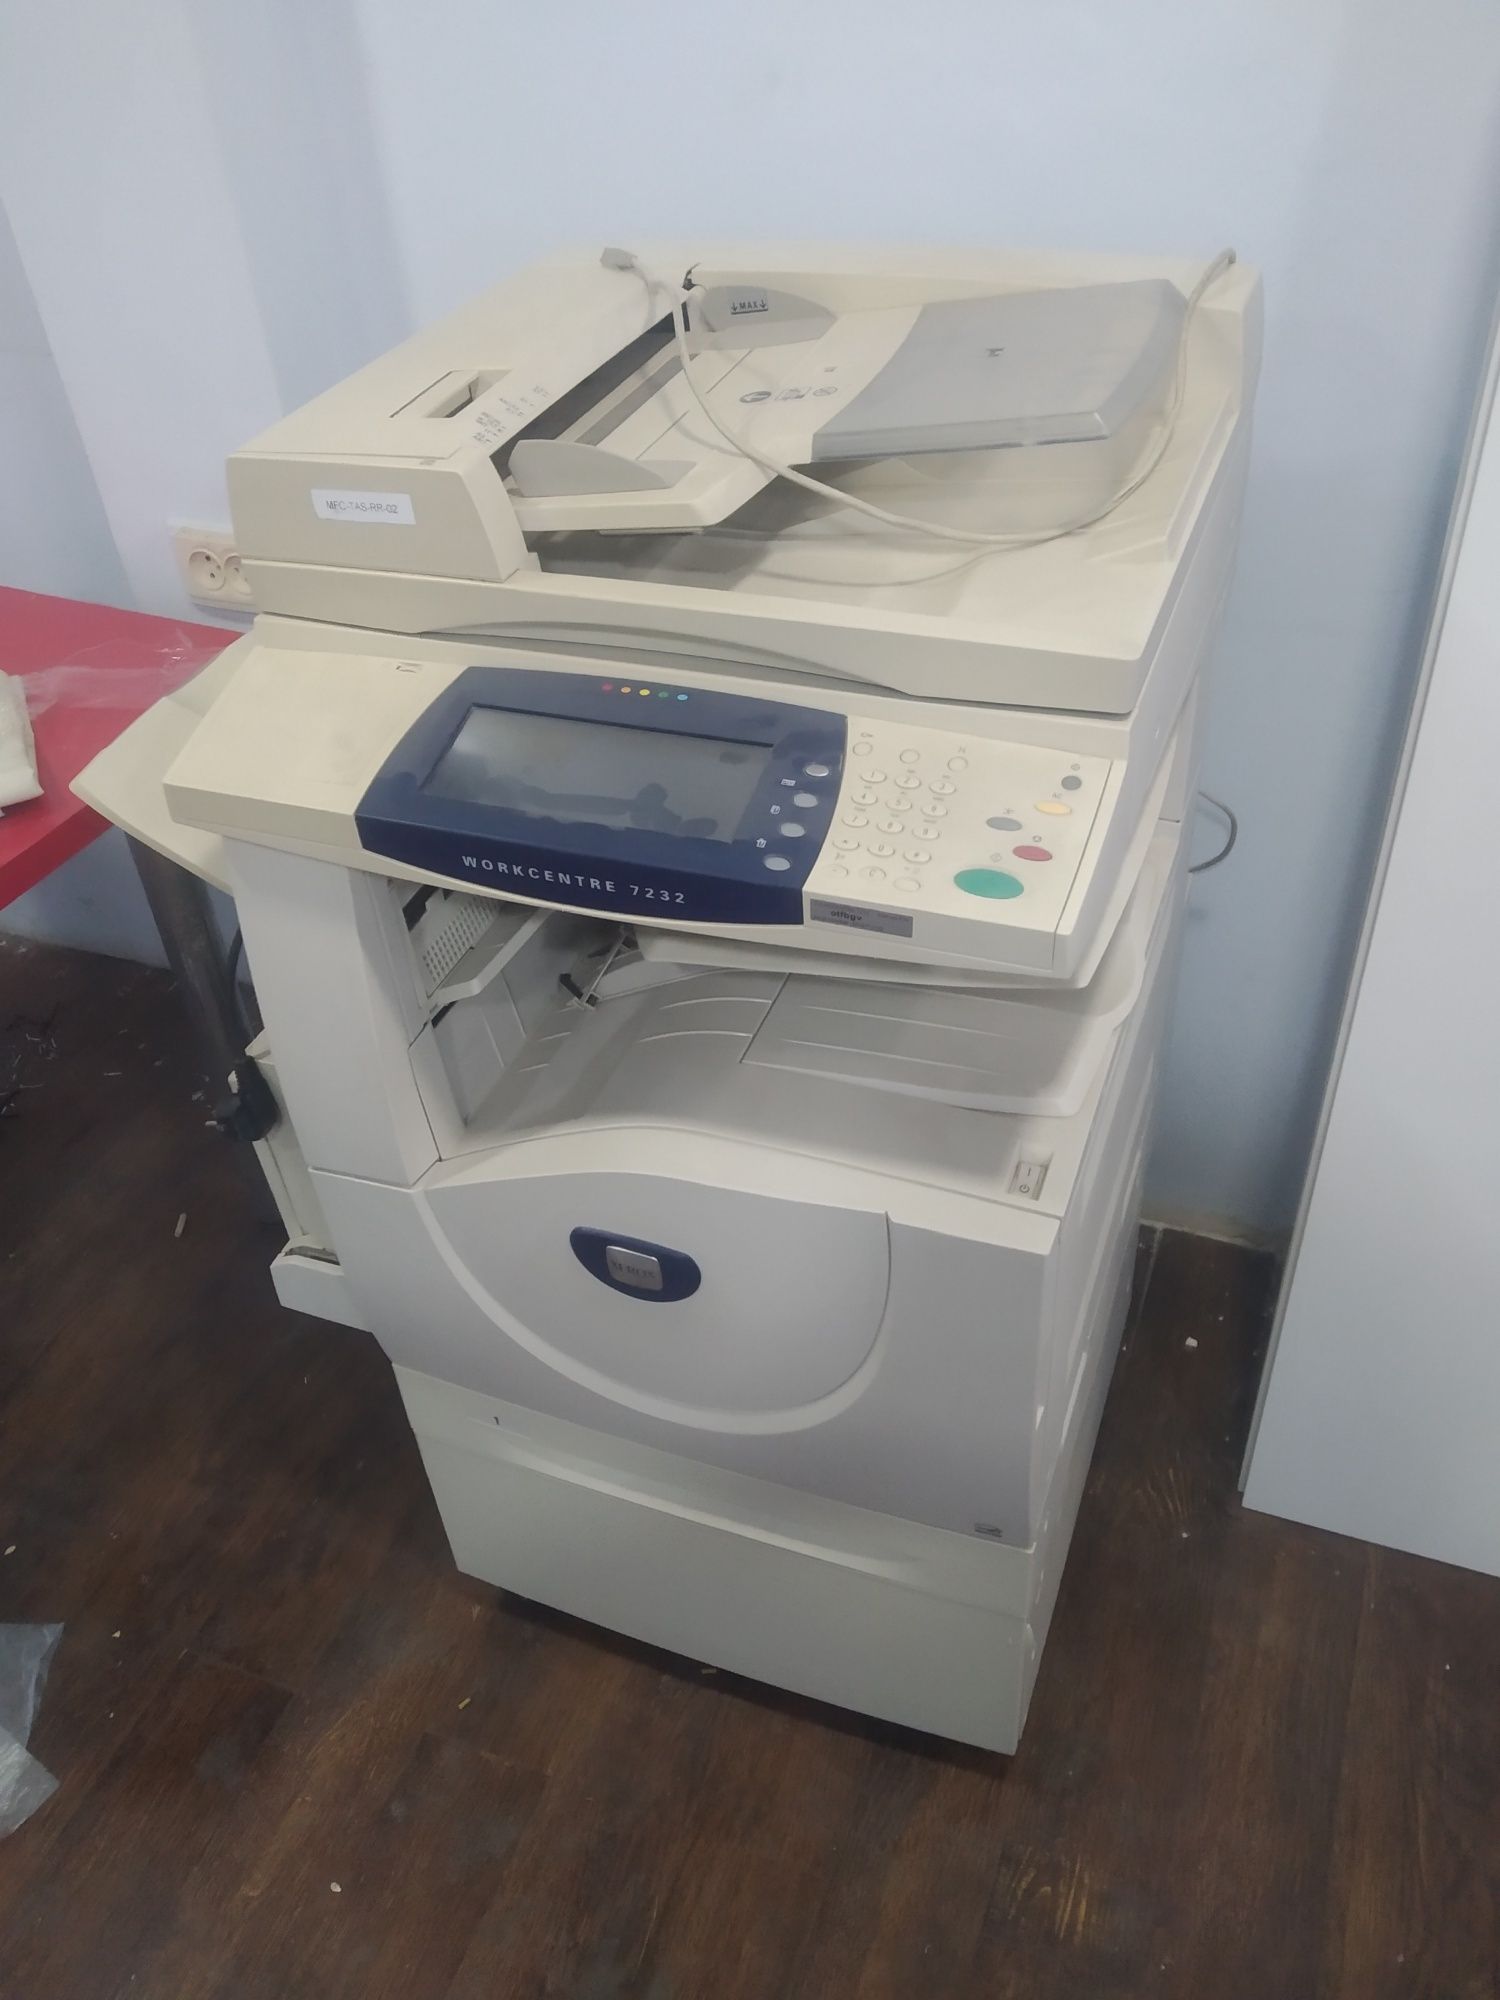 Xerox Workcentre цветной